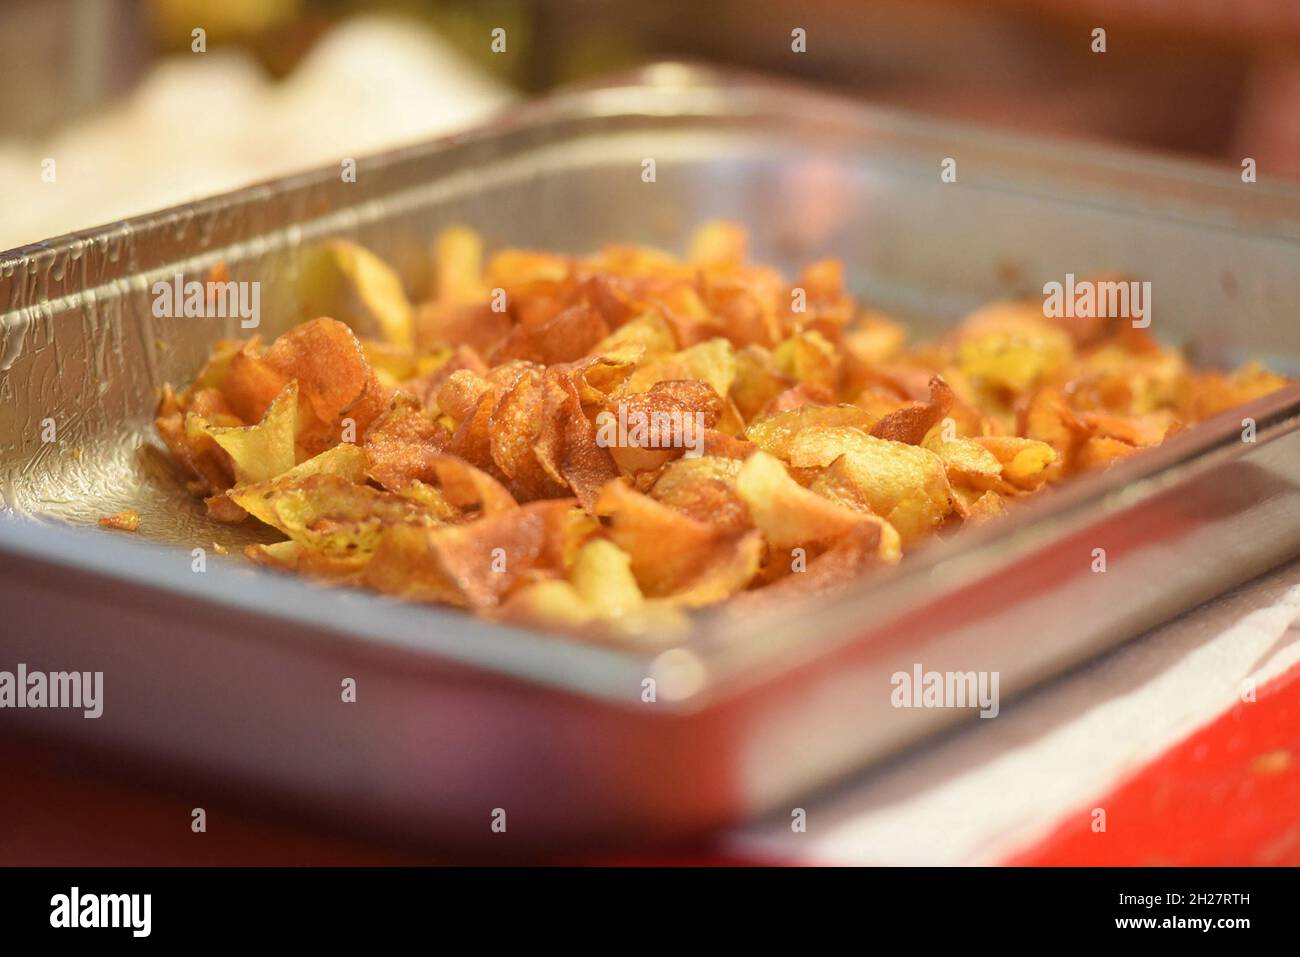 Herstellung von Kartoffelchips - Kartoffelchips machen Stockfoto